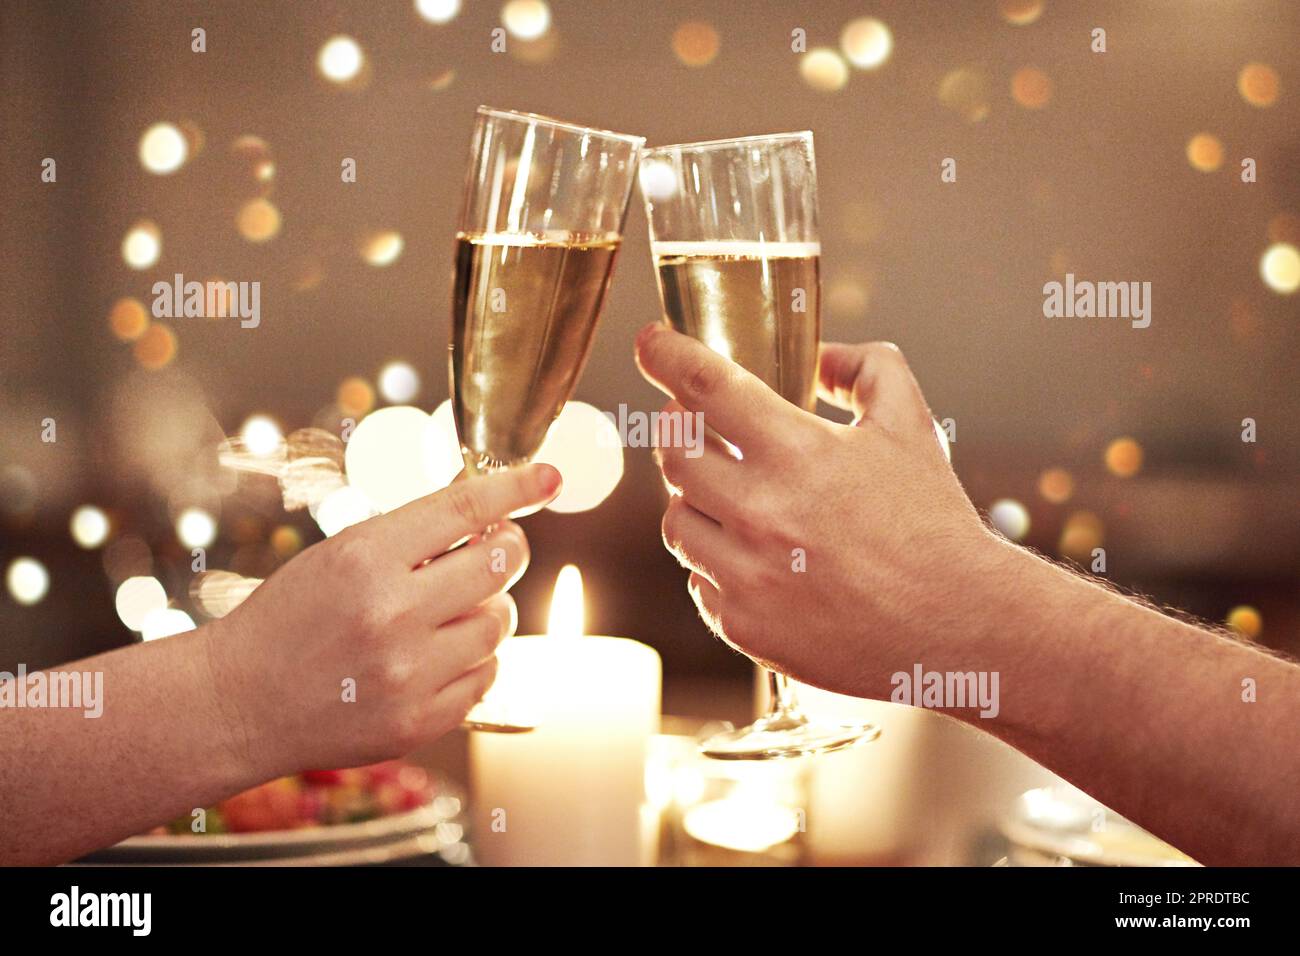 Jubel, Toast und Feier mit einem Paar zu einem romantischen Date für ihre Verlobung, ihren Jahrestag oder ihre Flitterwochen. Ein Candle-Light-Dinner mit Weingläsern in den Händen eines Mannes und einer Frau in einem Restaurant Stockfoto